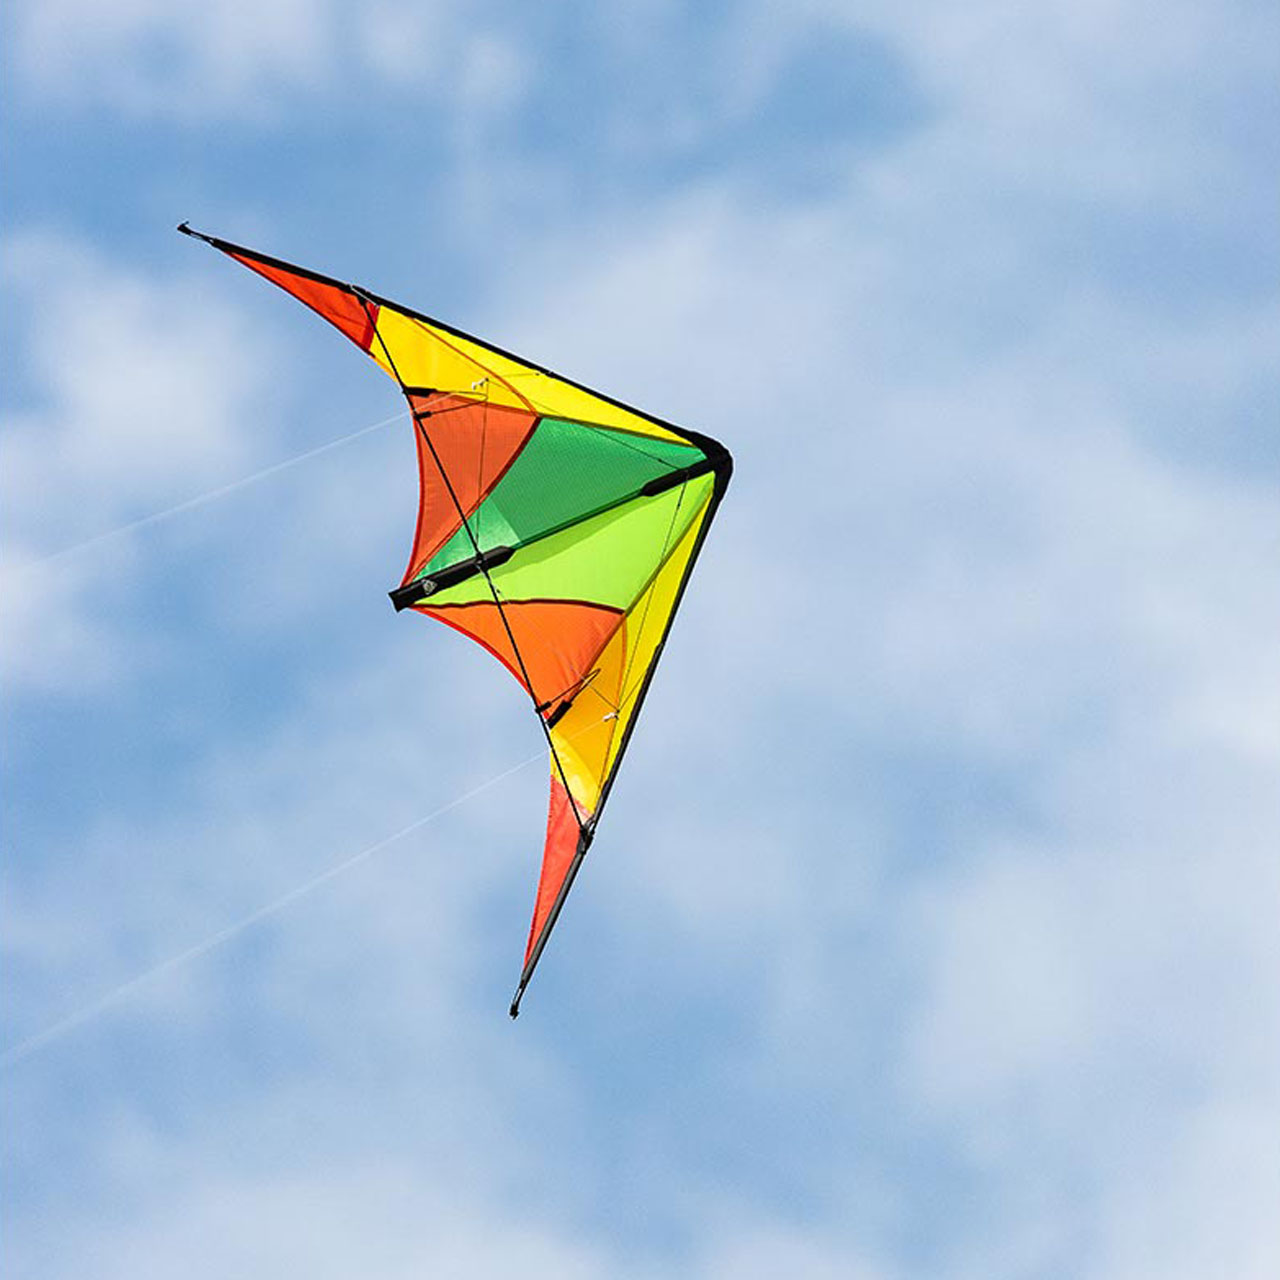 Invento HQ Kite Calypso 2 Autumn Fun – Inspiration 2